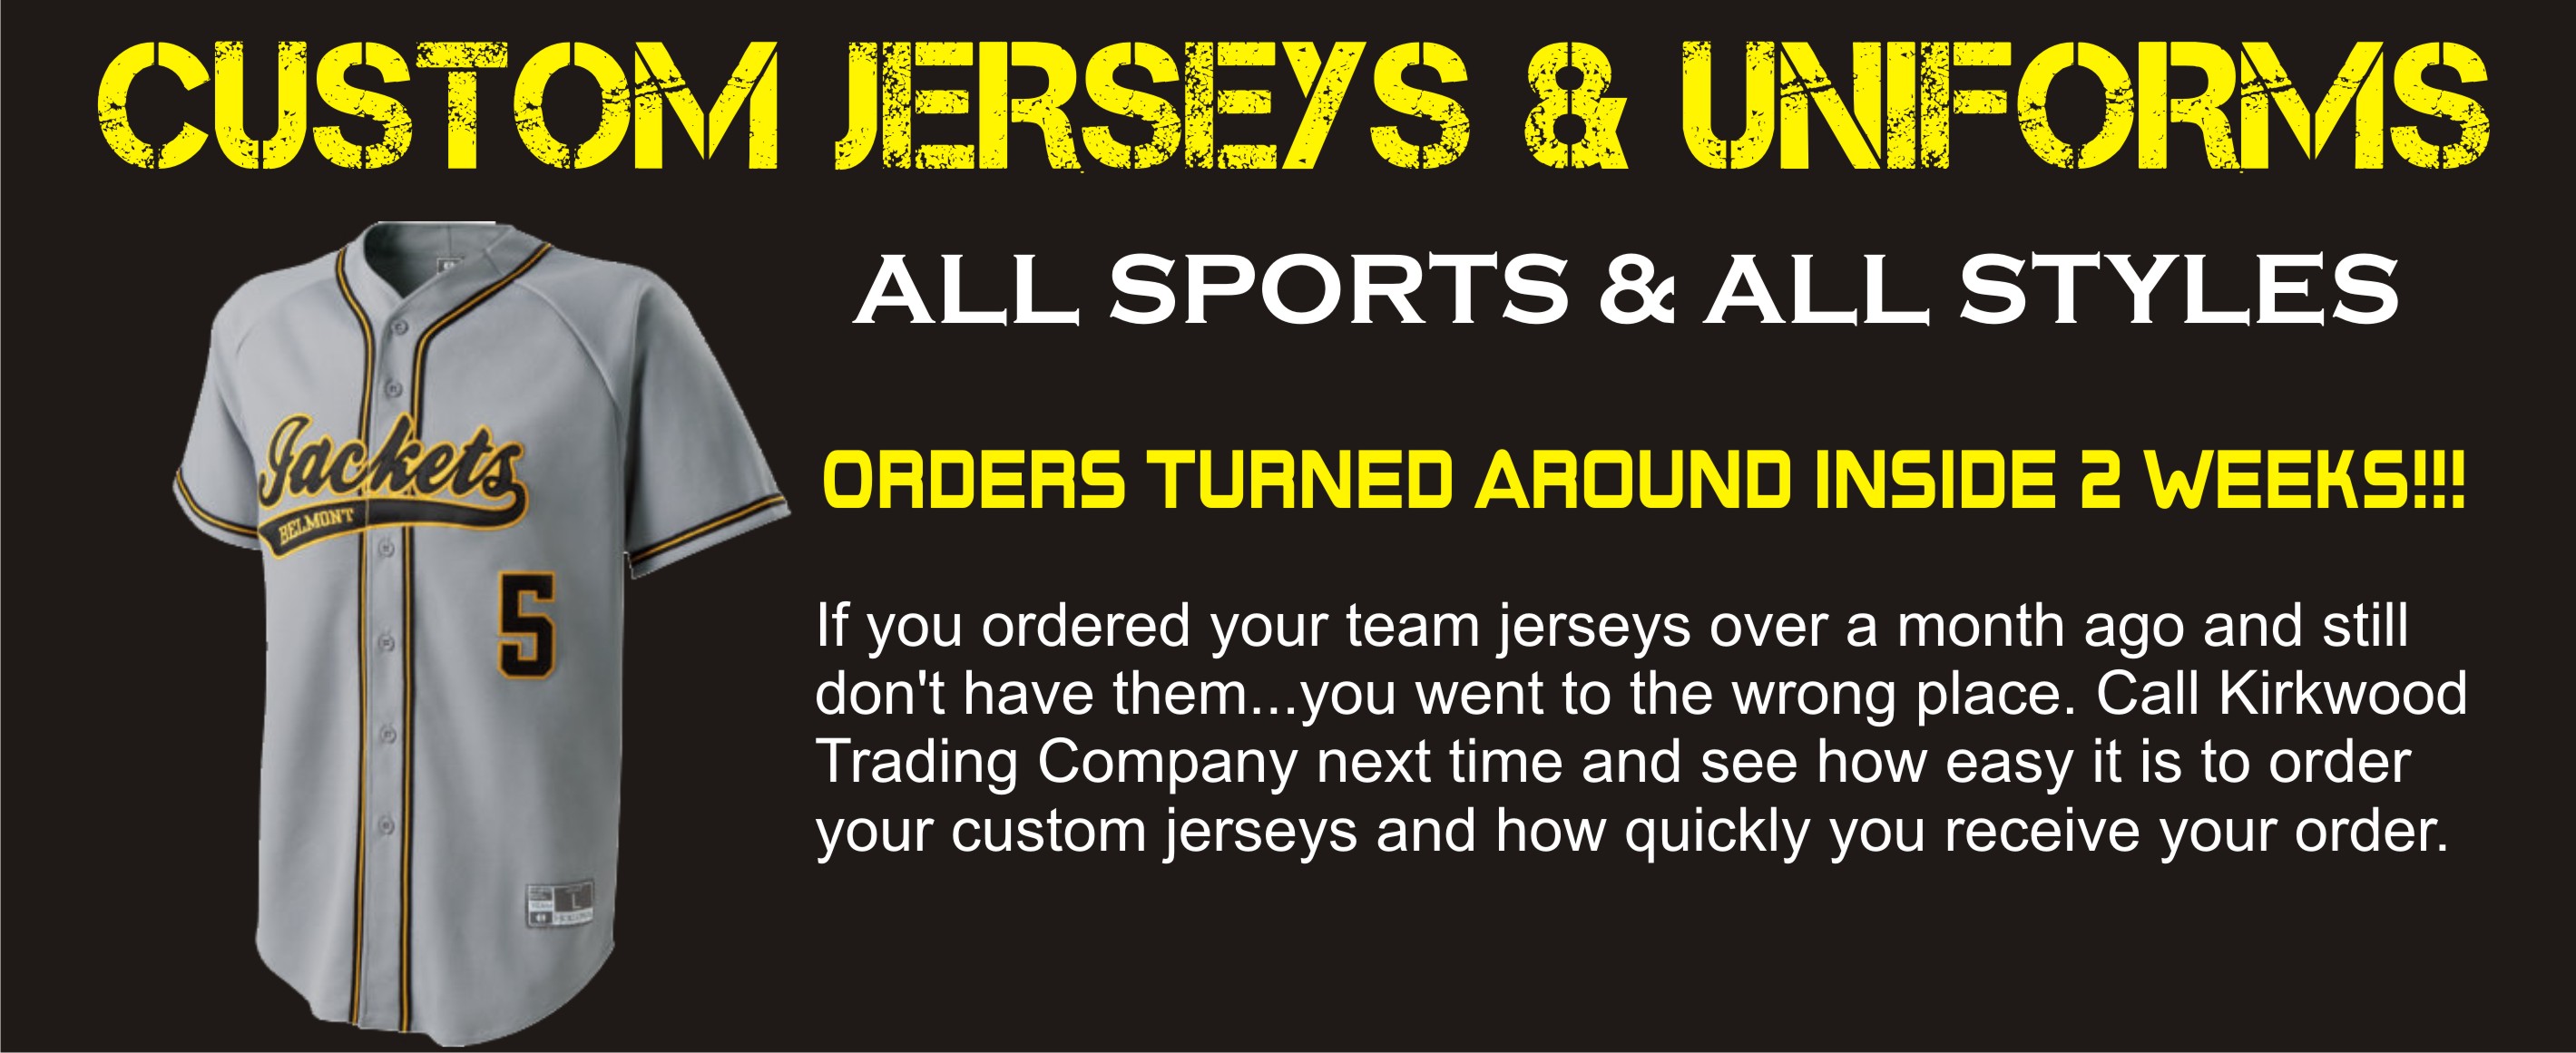 order custom jerseys